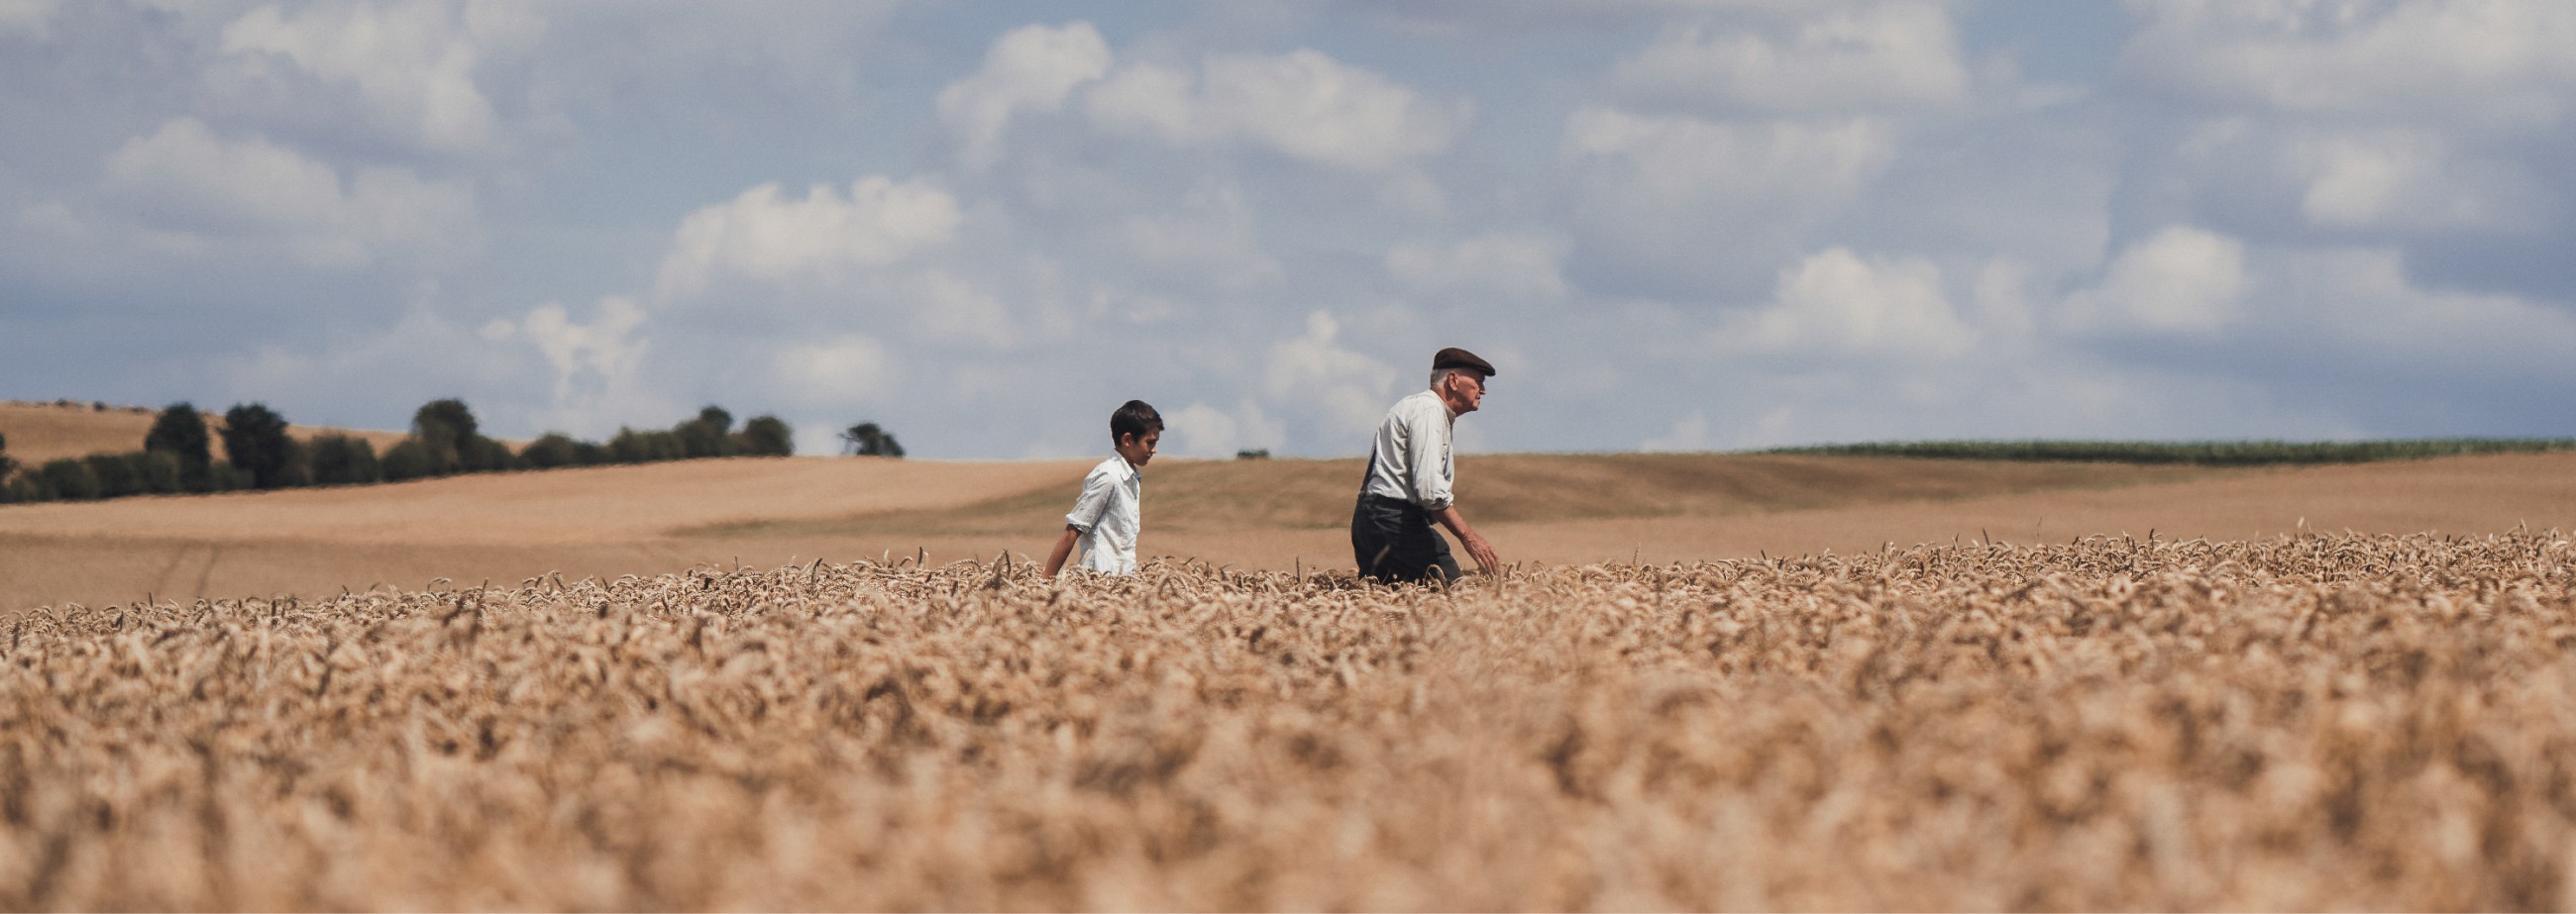 homme et enfant dans un champ de blé